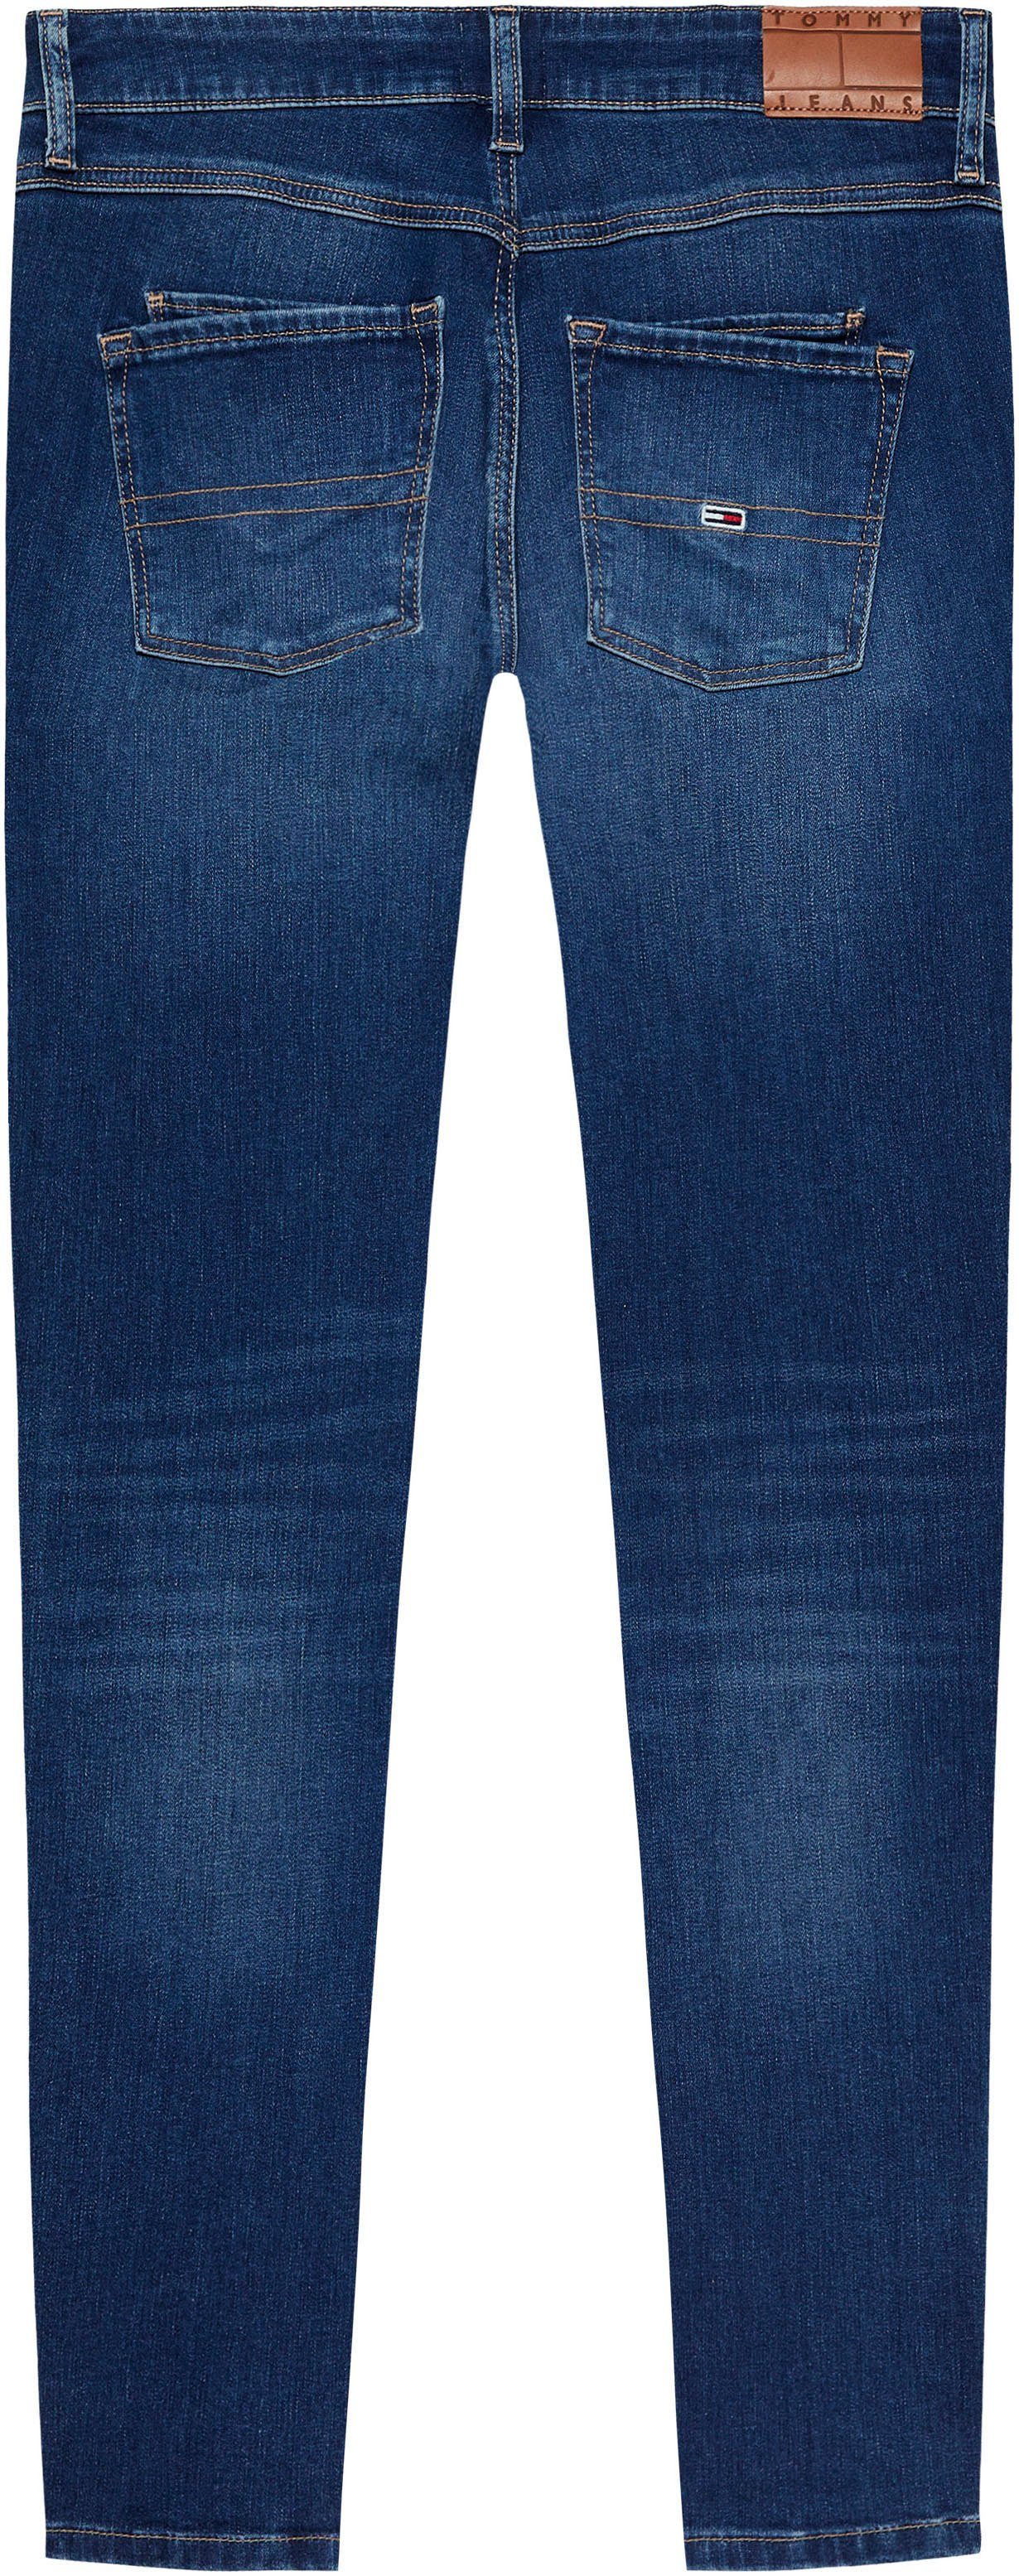 TOMMY JEANS Skinny fit jeans SCARLETT LW SKN ANK ZIP AH1239